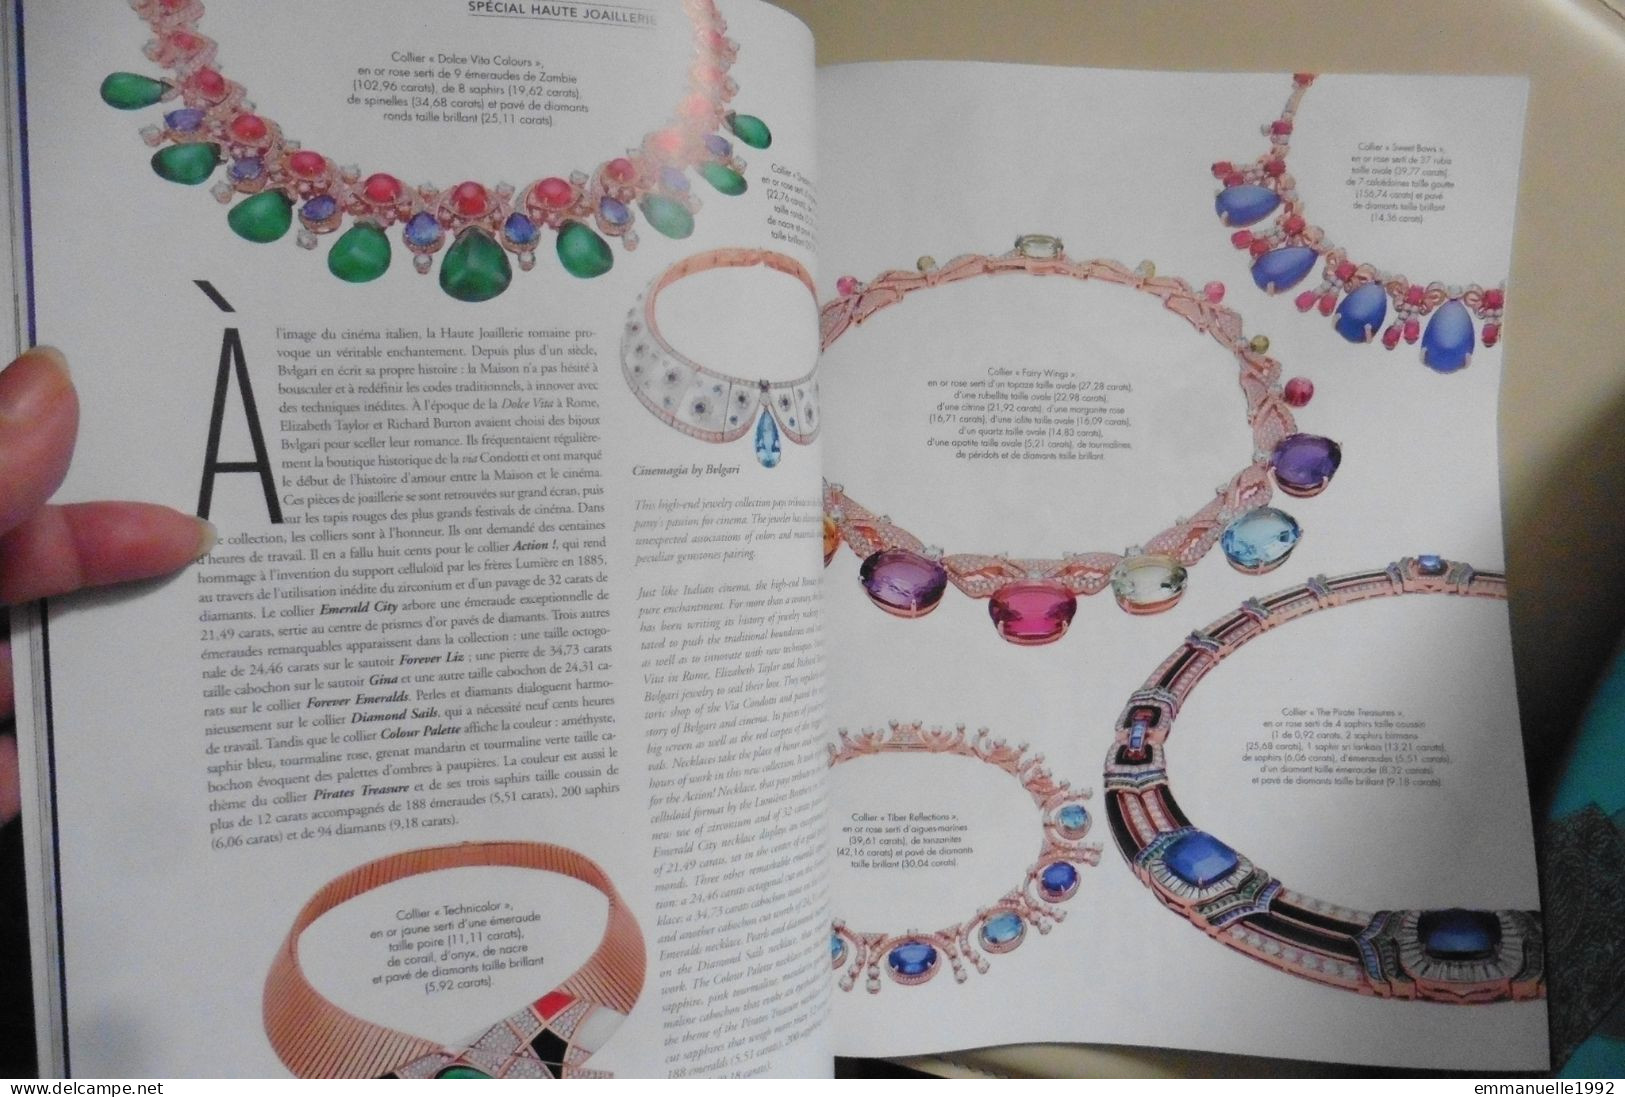 Magazine Dreams n°77 de 2019 Bijoux horlogerie joaillerie Piaget Bulgari Chopard Cartier Van Cleefs & Arpels etc